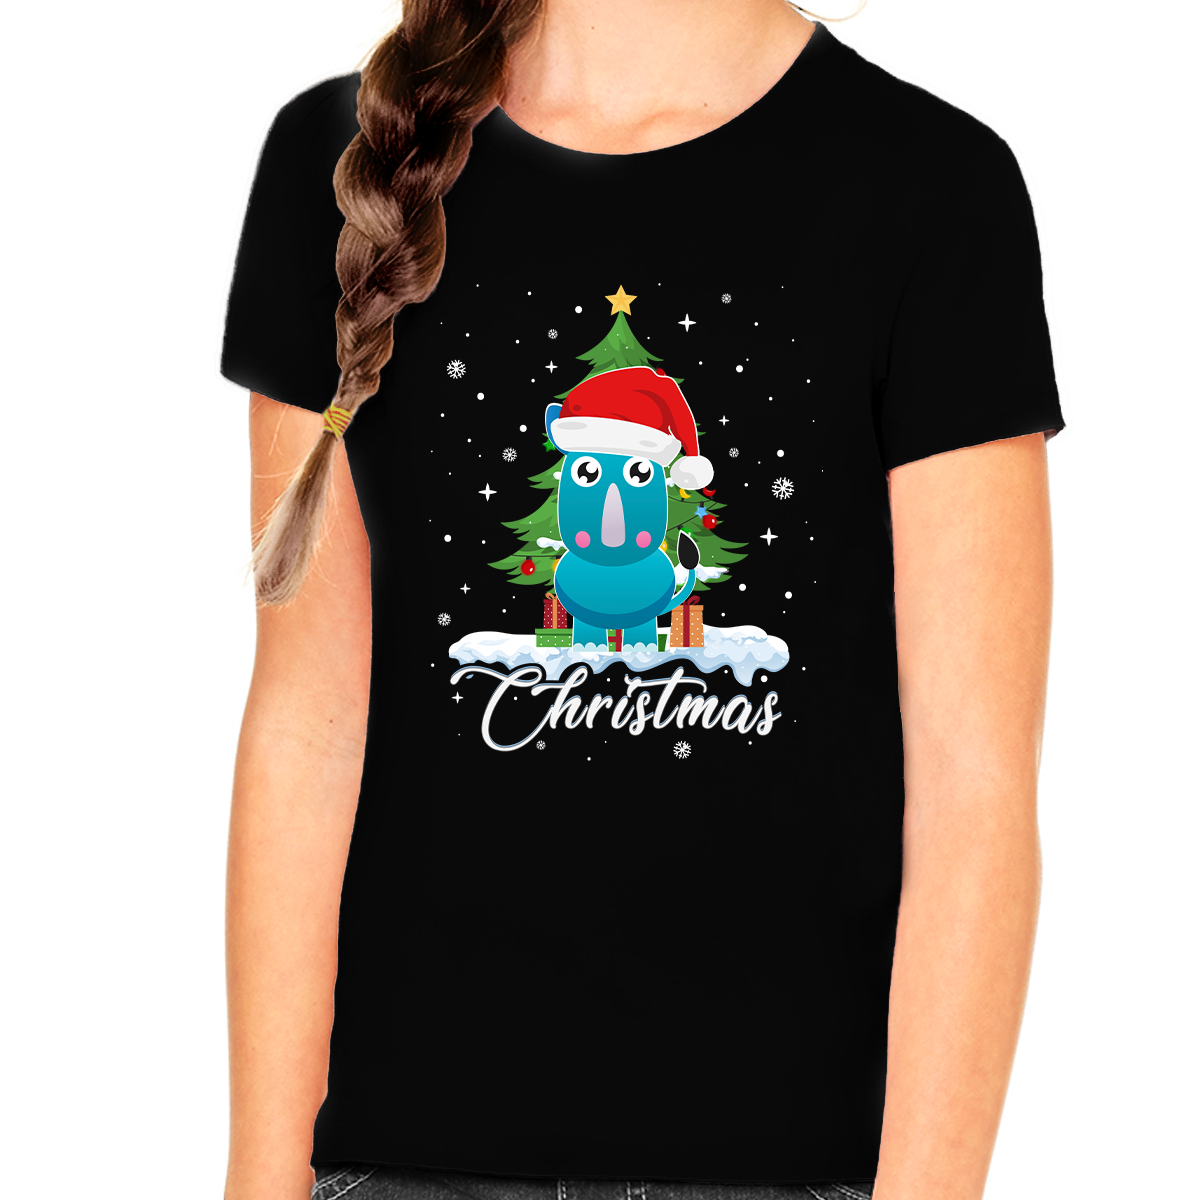 Girls Christmas Shirt Cute Santa Donkey Christmas Outfits for Girls Christmas Shirts for Kids